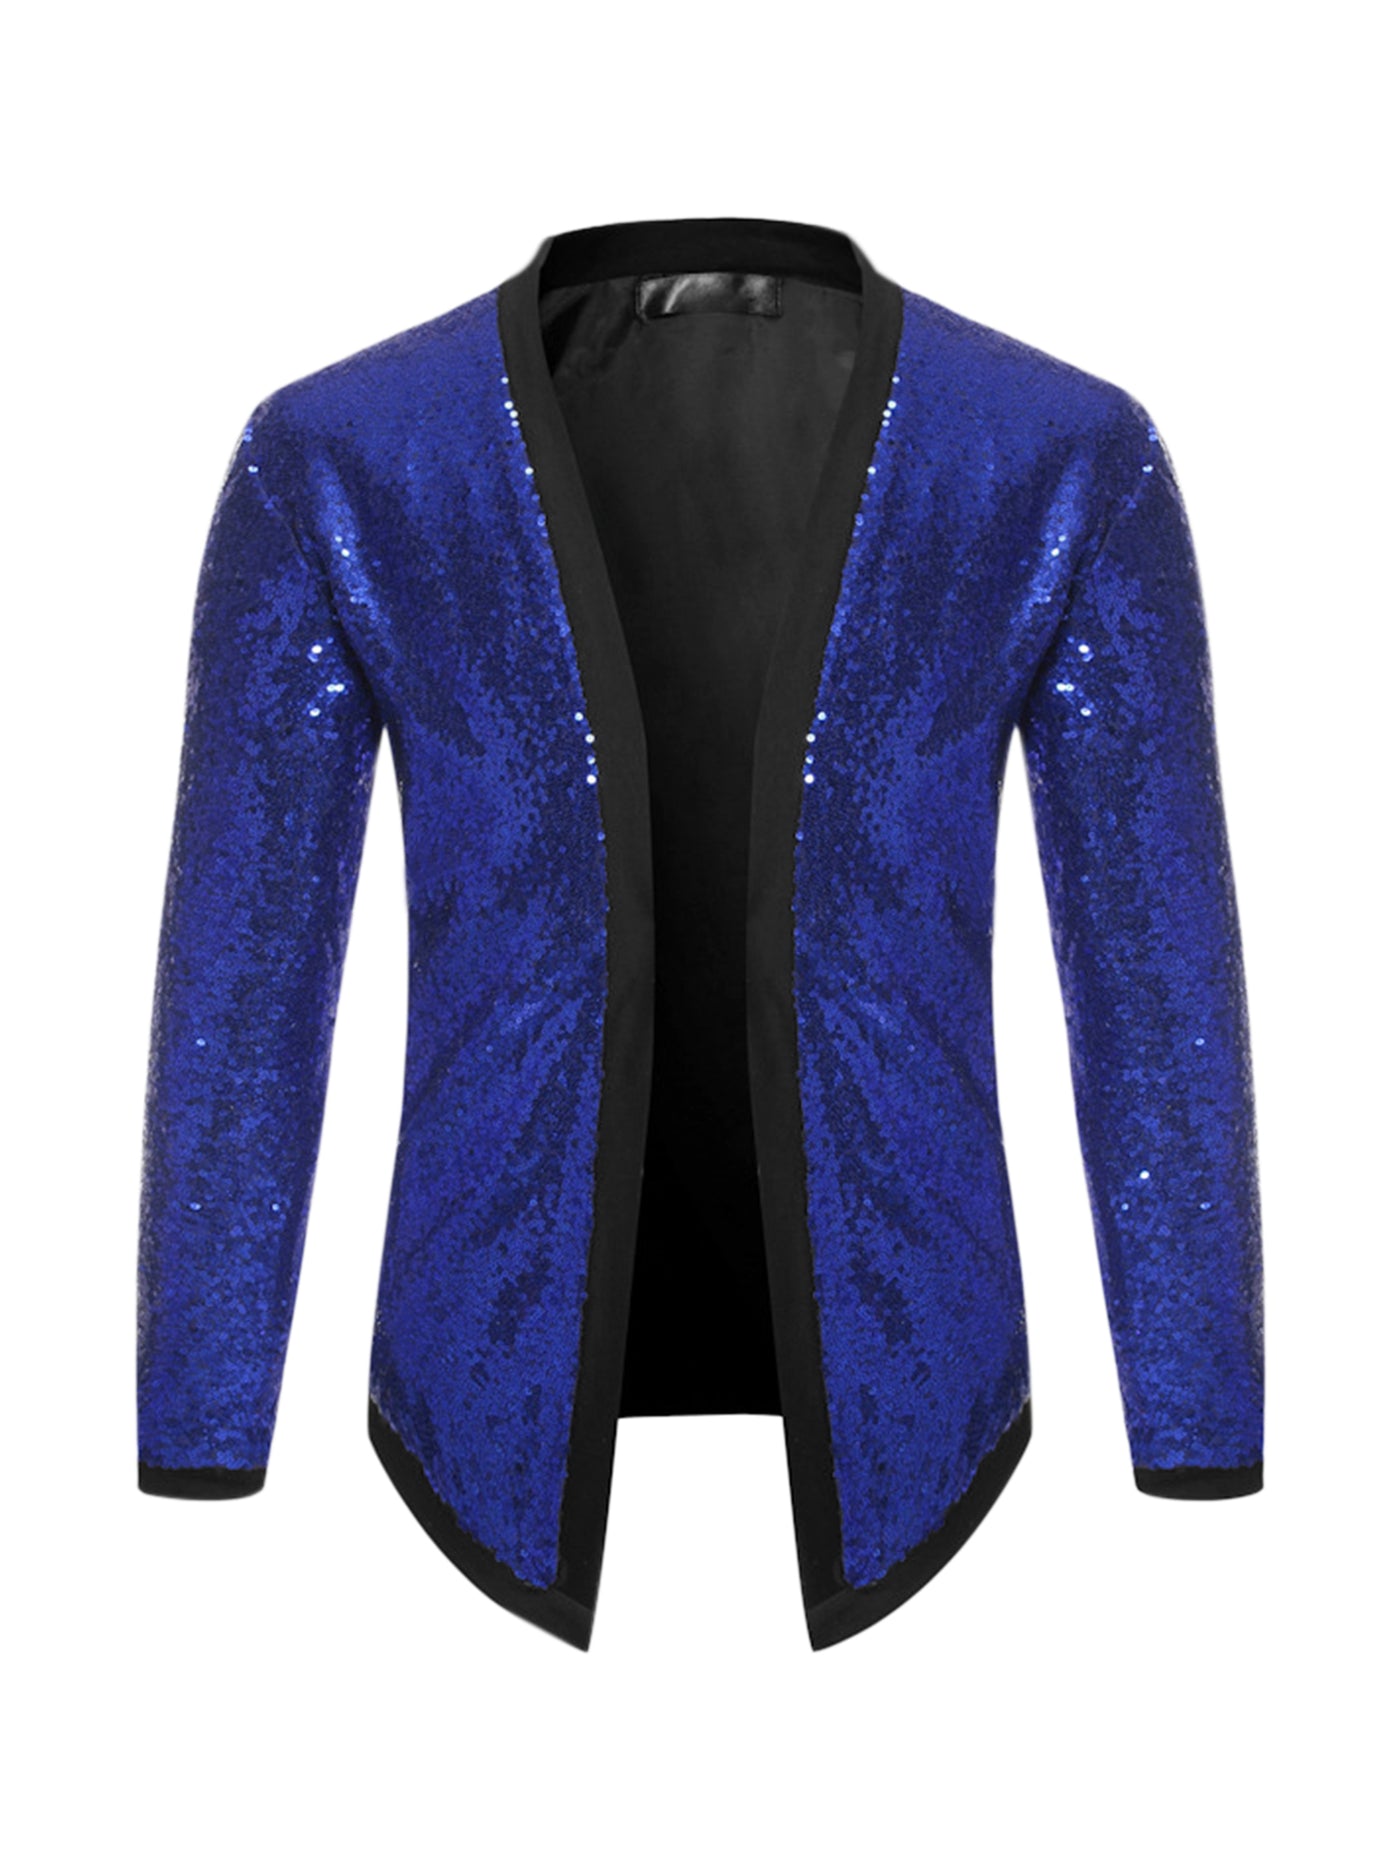 Bublédon Men's Sequin Cardigan Sparkle Open Front Disco Party Glitter Jacket